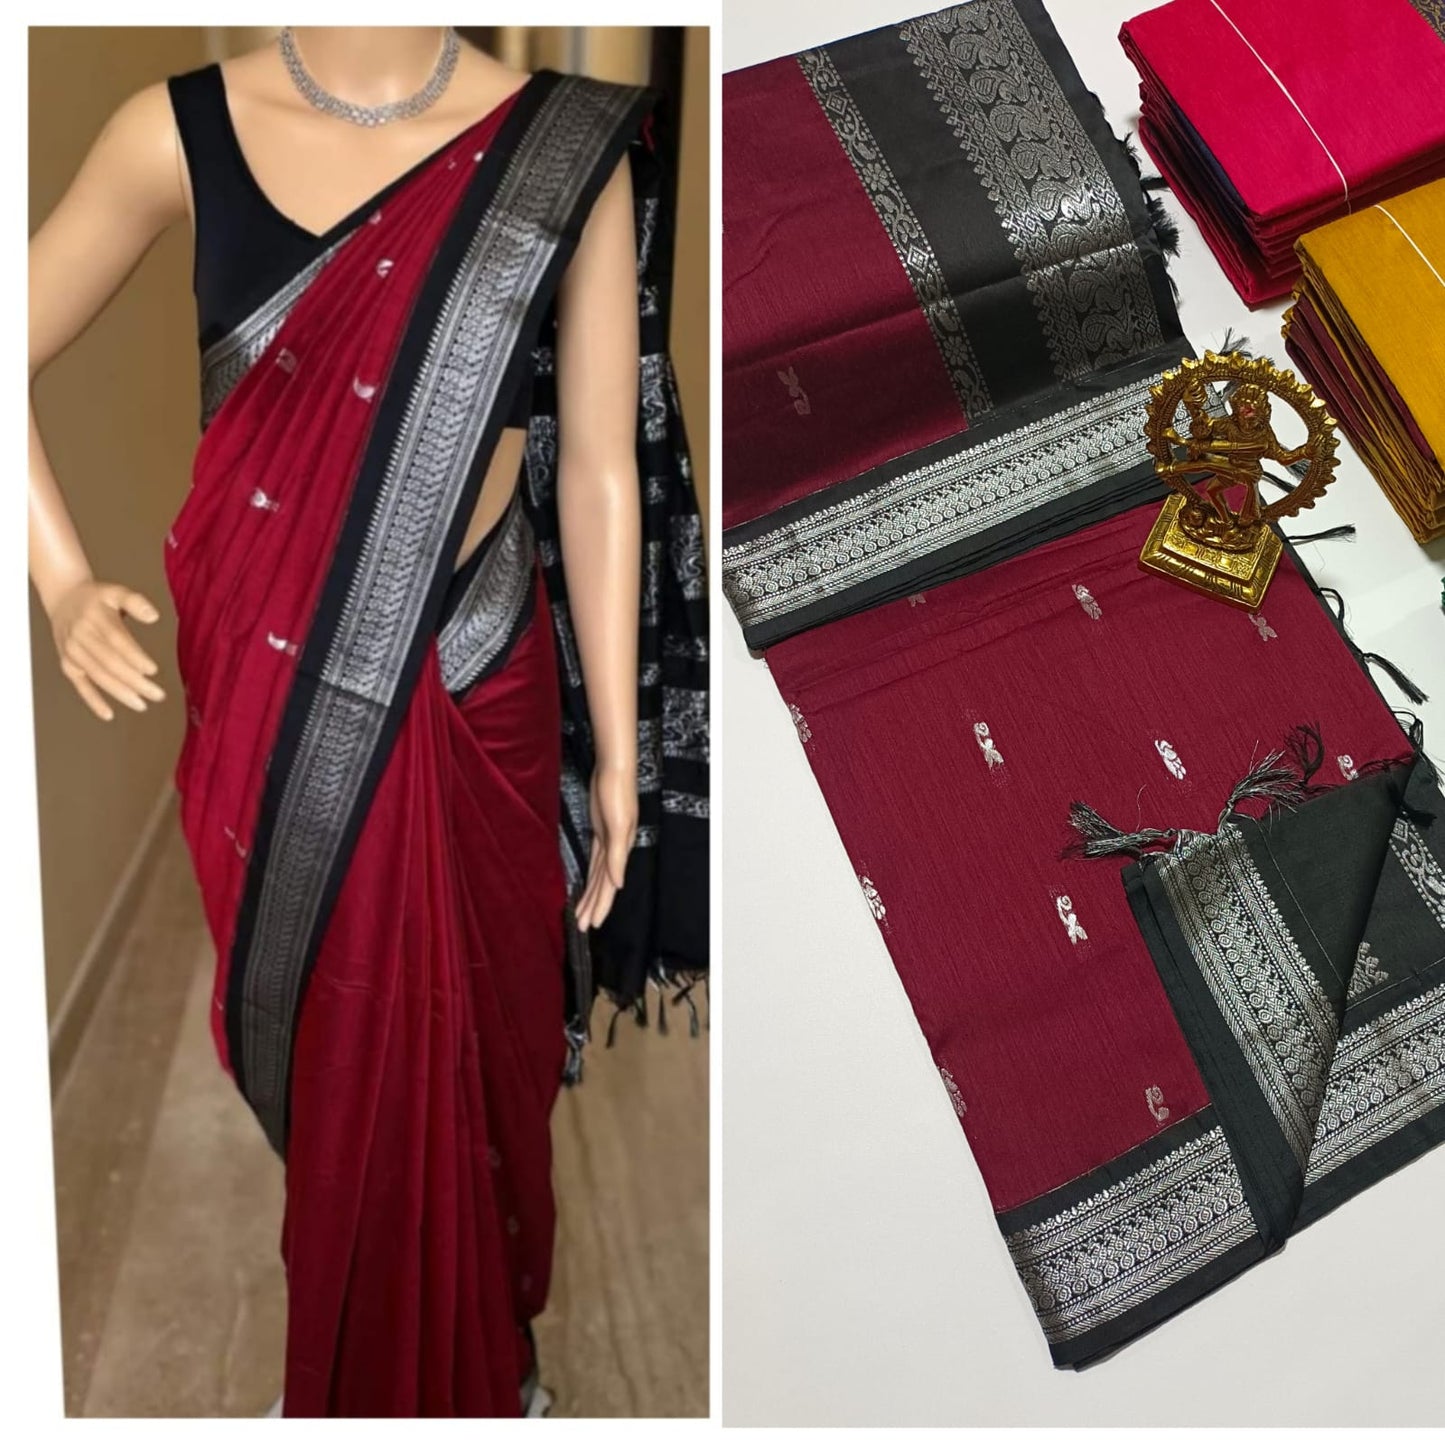 Red and black Kalyani cotton saree